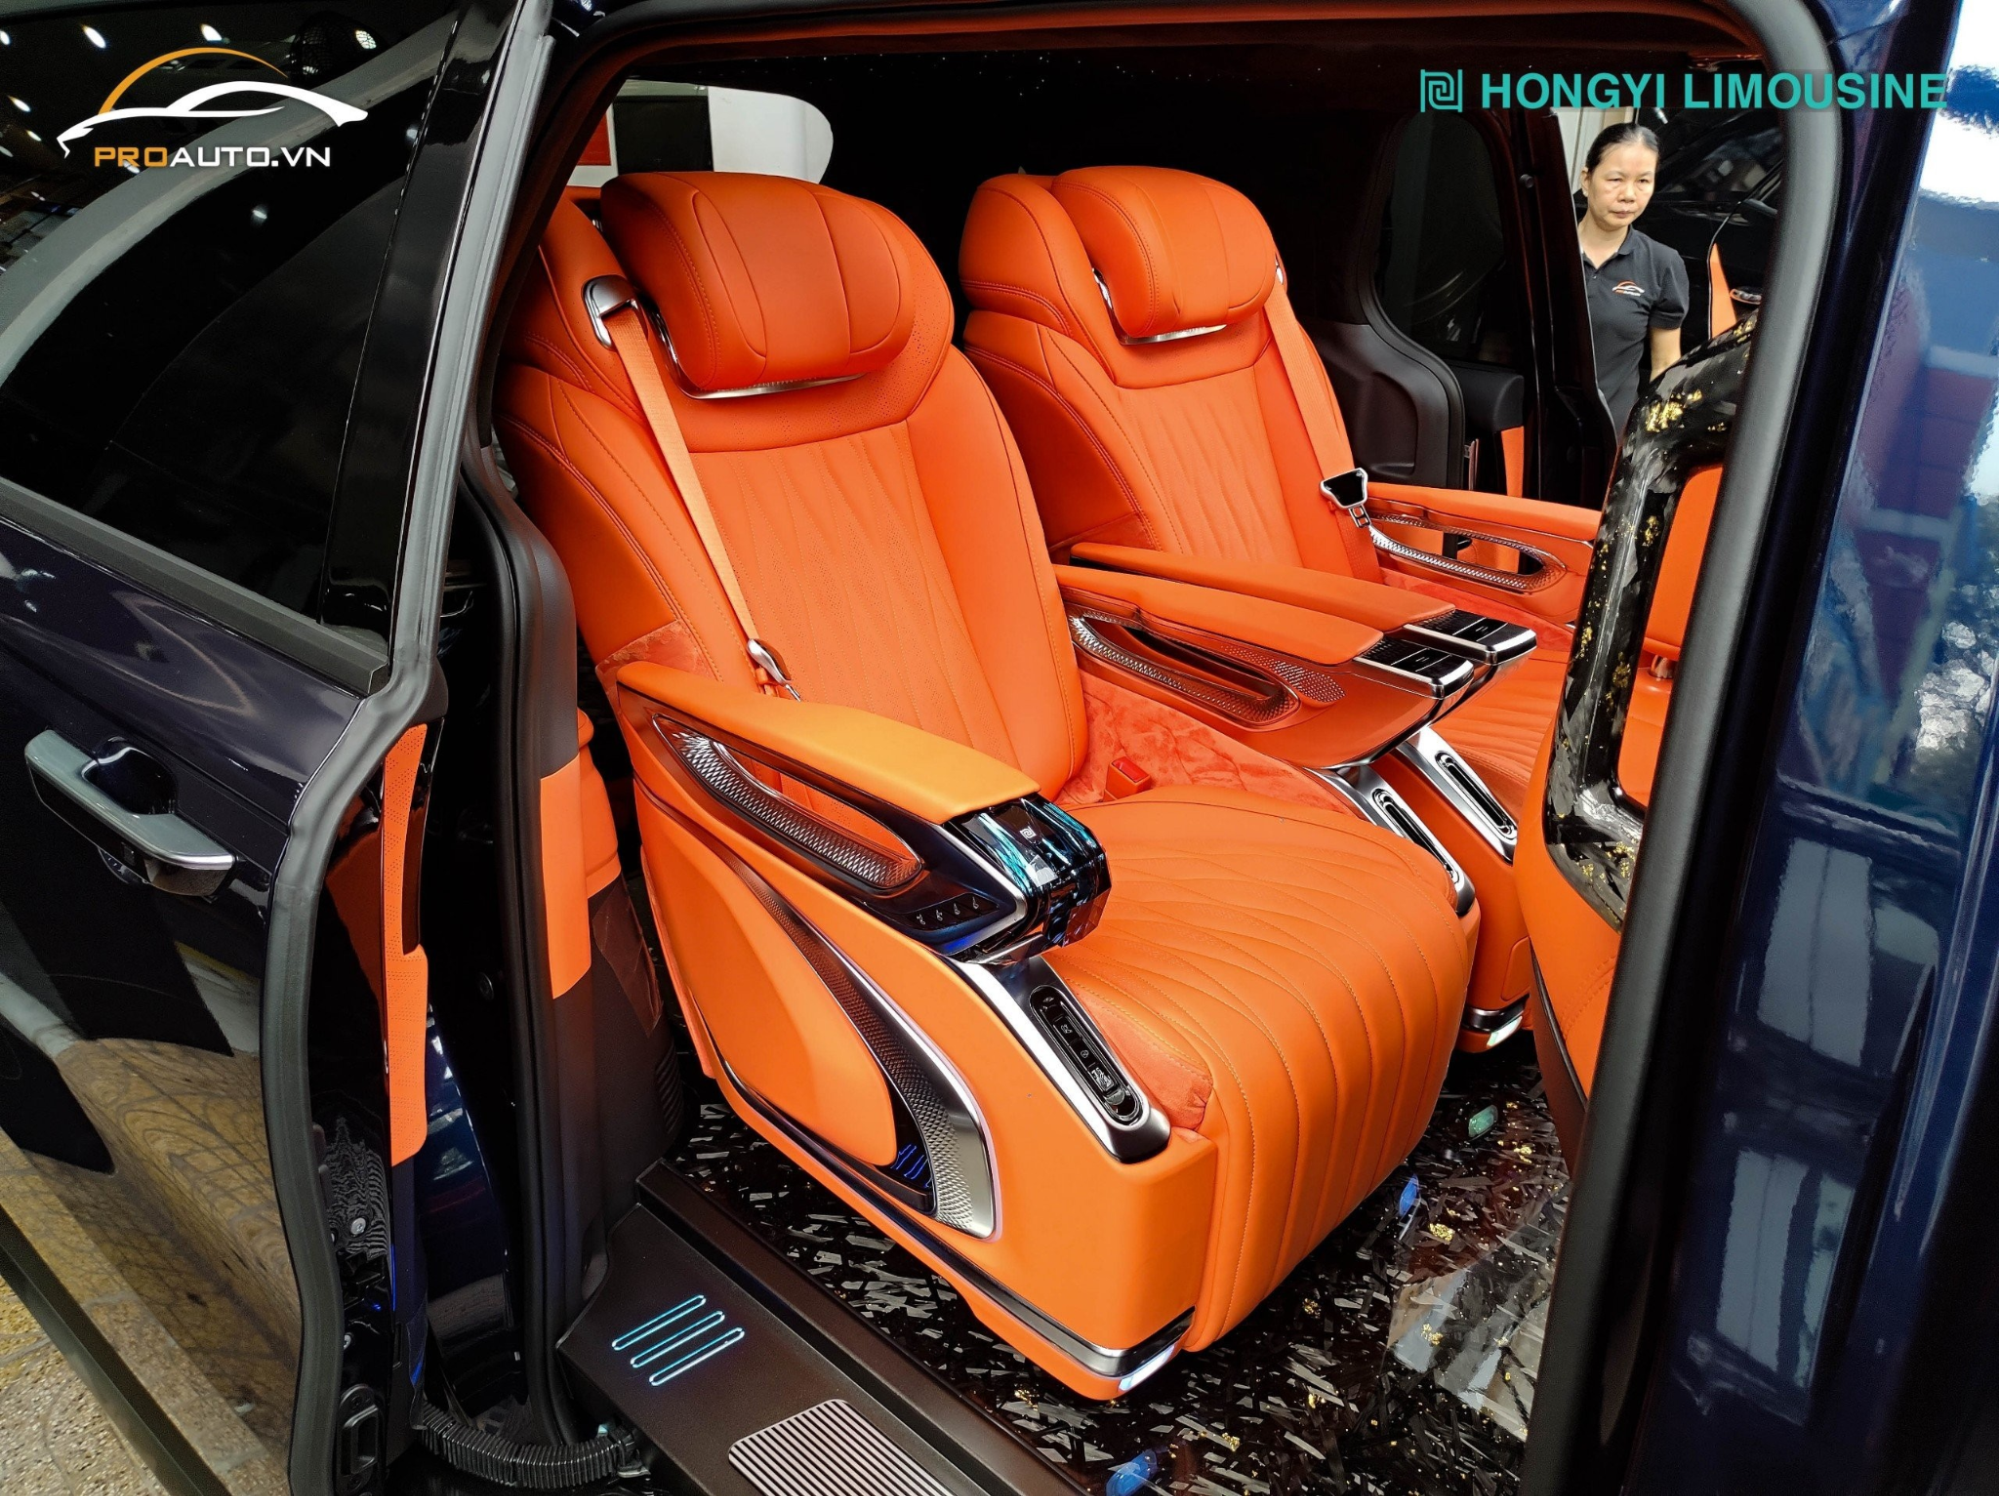 Mẫu ghế Hongyi Limousine chính hãng với màu cam hot hiện nay